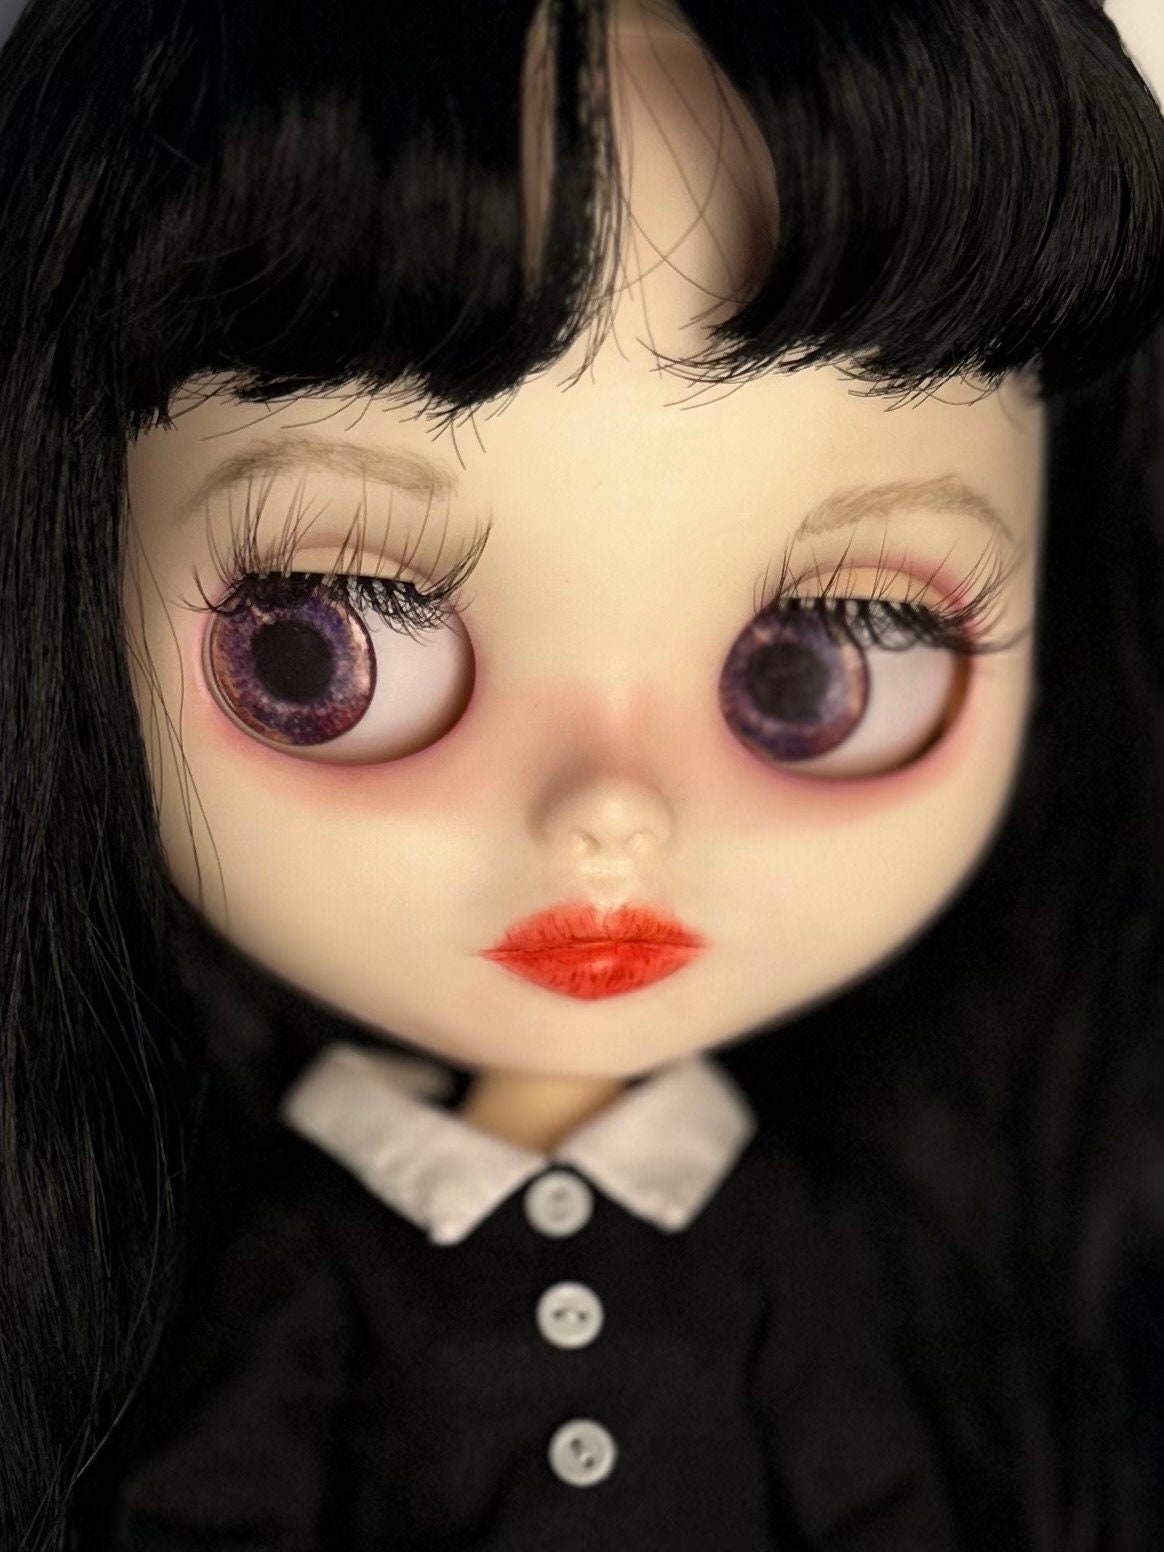 Mercoledì Addams Bambola Blythe personalizzata di PURPLELY